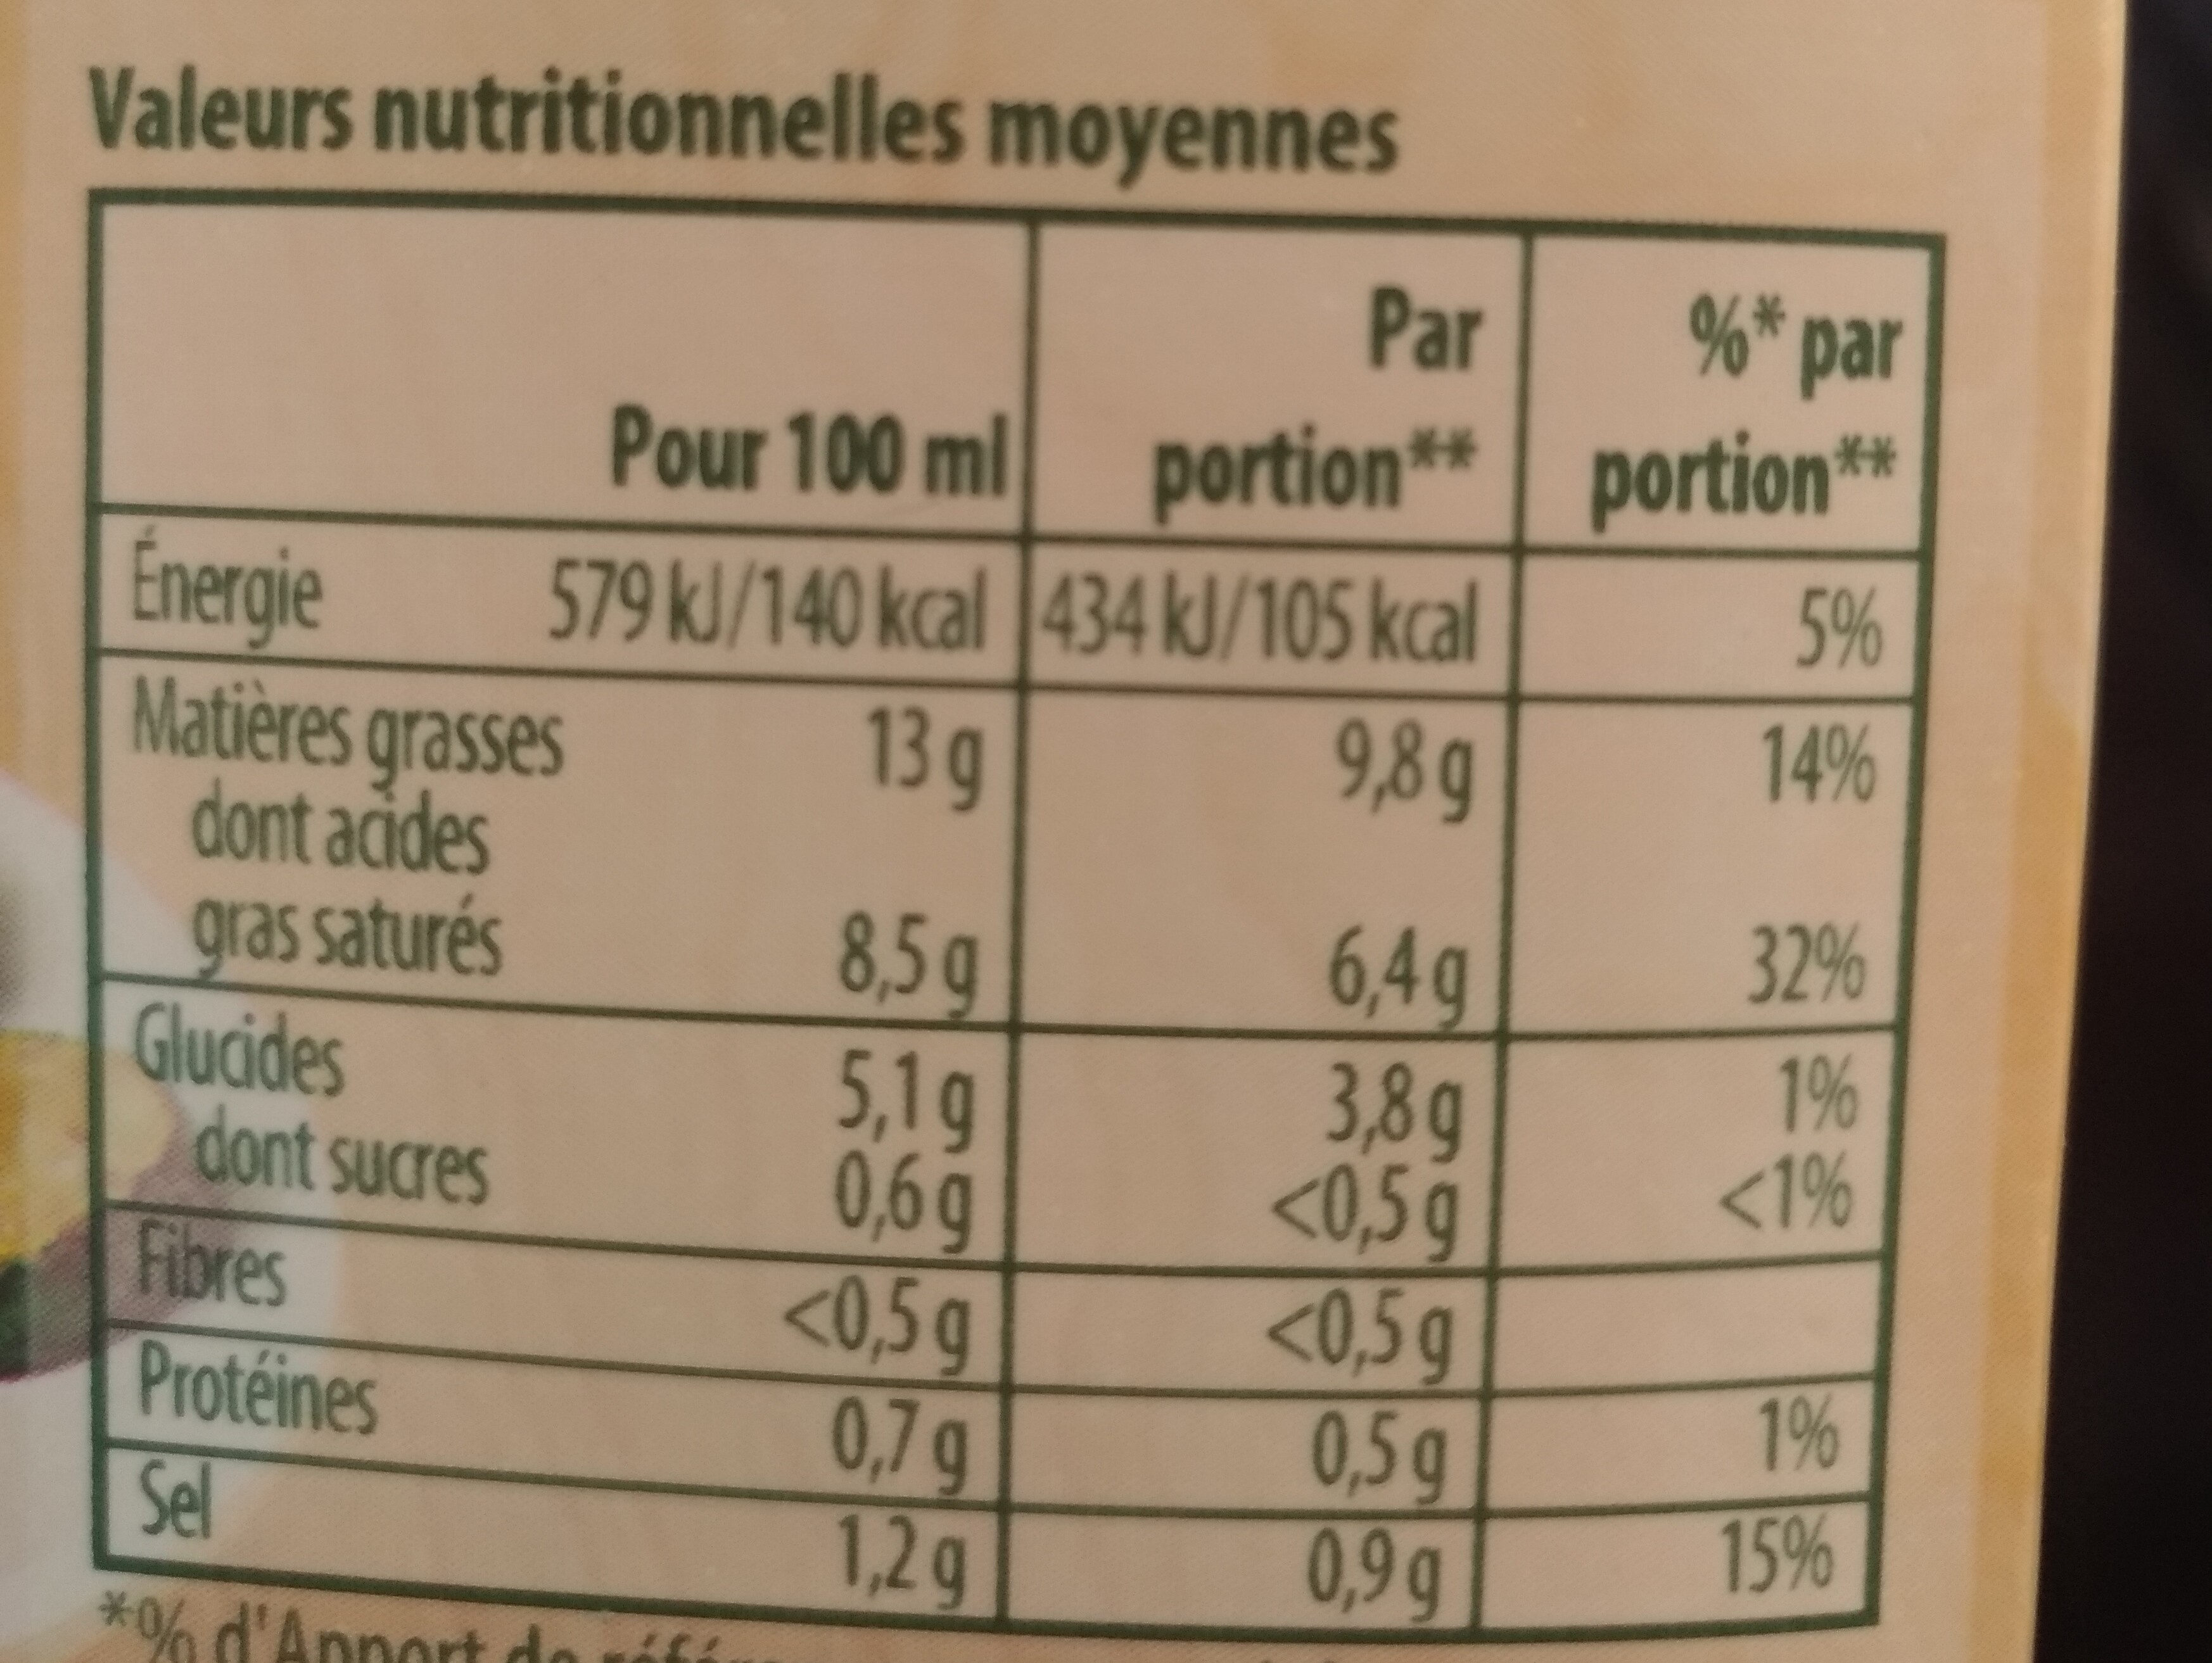 Knr sce beur blc 300ml os - Nutrition facts - fr